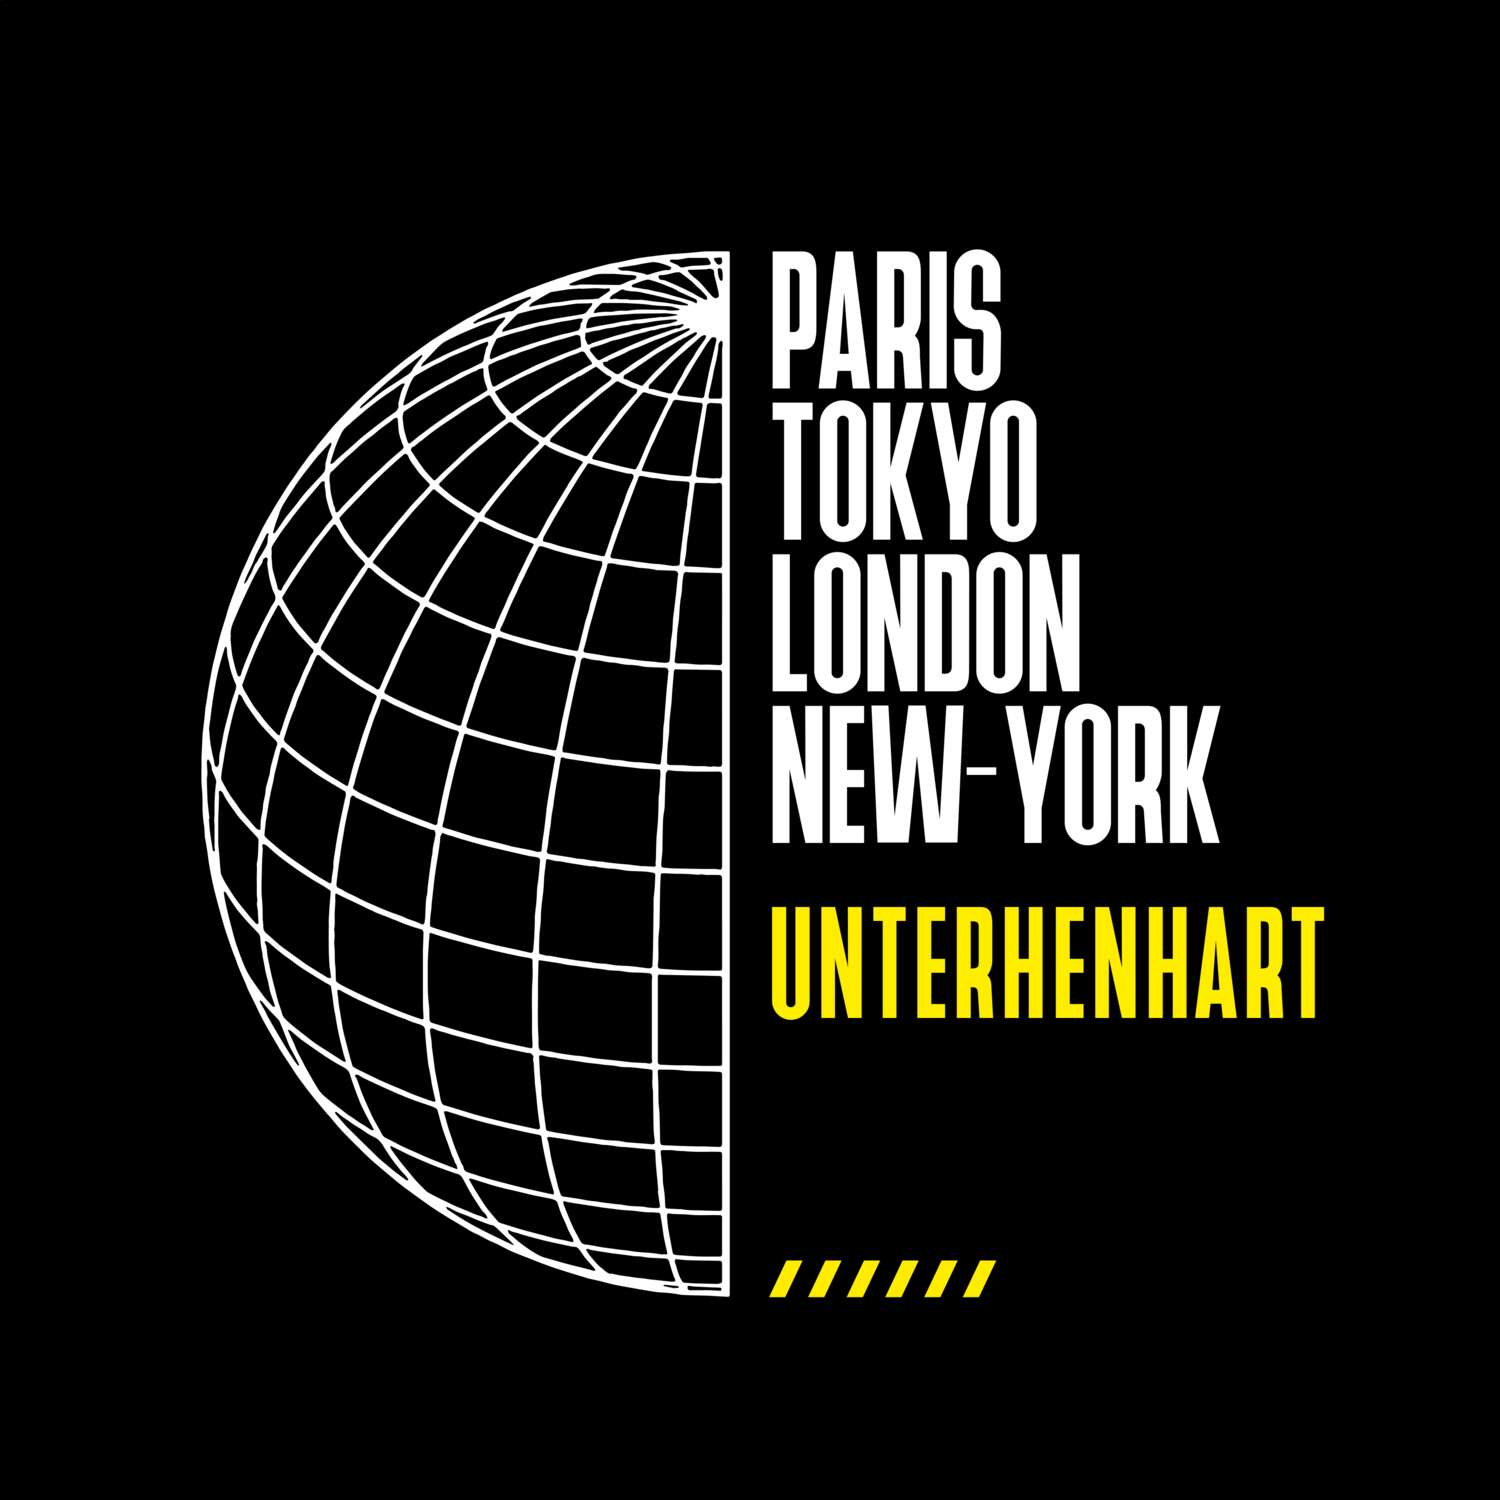 Unterhenhart T-Shirt »Paris Tokyo London«